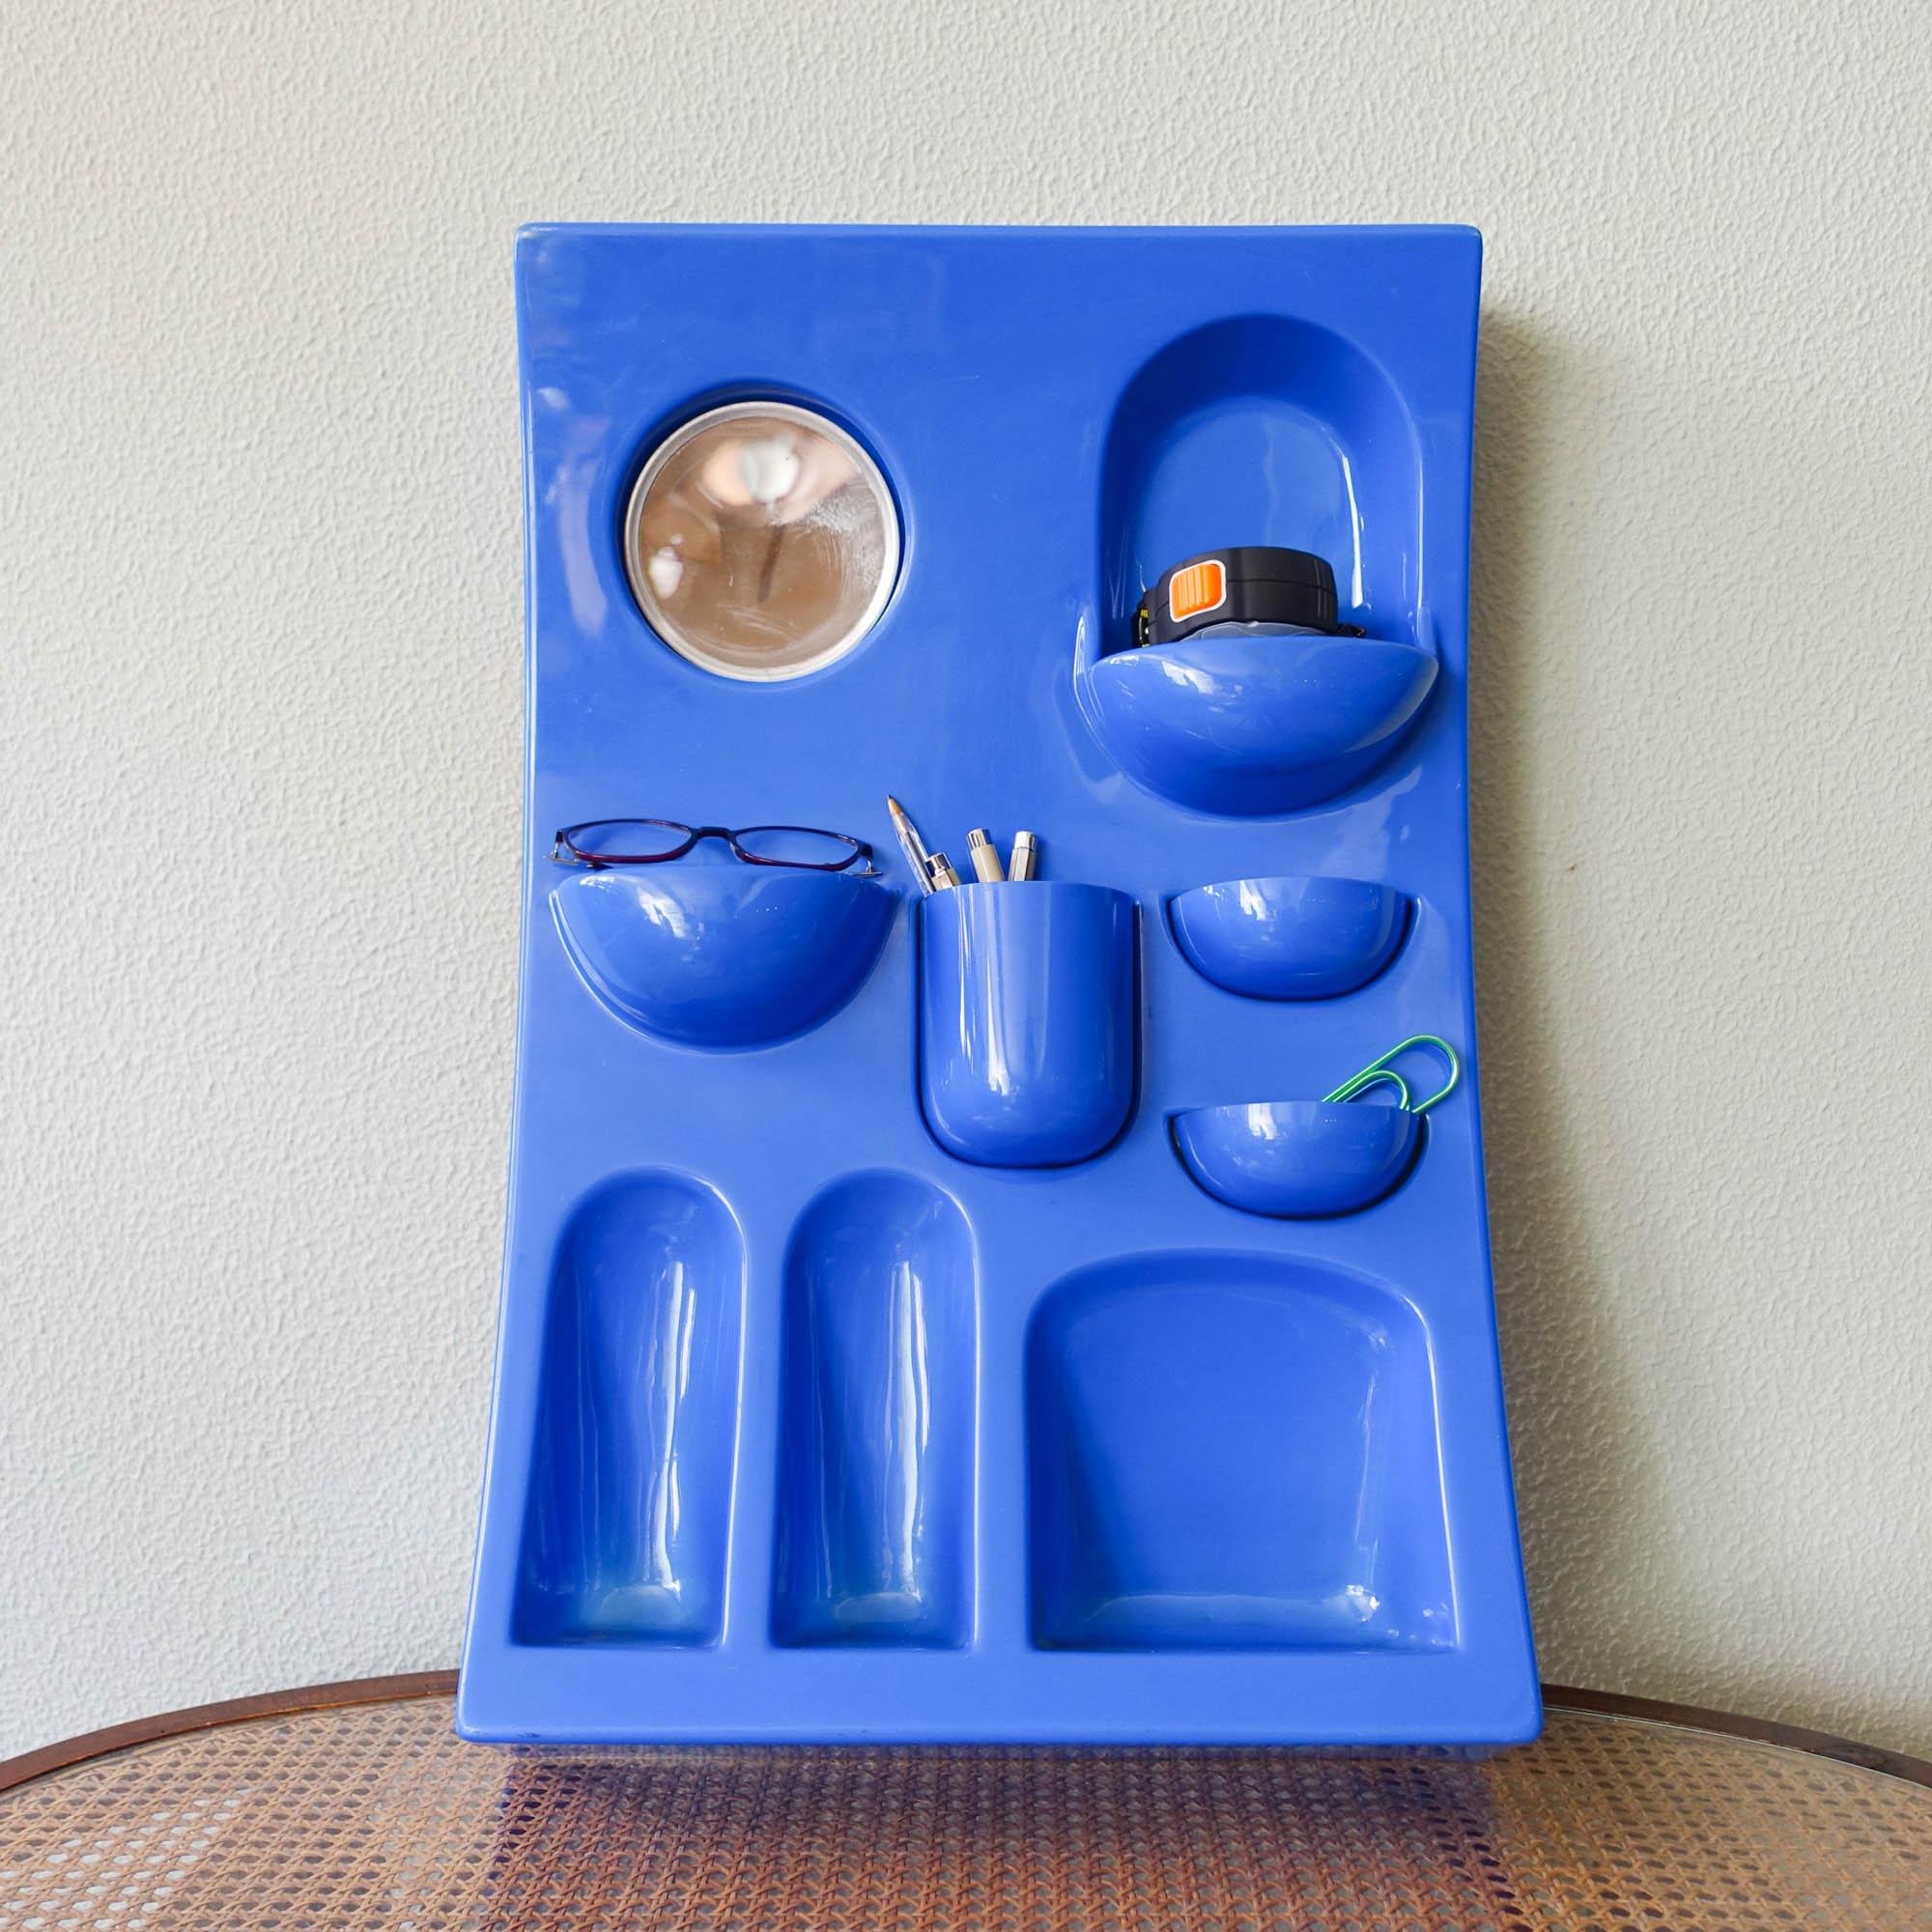 Un organisateur mural en plastique ABS bleu des années 1970. Conçu et produit par Visiva srl, Milano, Italie, dans les années 1970. Similaire à l'Uten.Silo de Dorothee Becker pour Vitra. Avec une variété de petites poches, de récipients, d'étagères